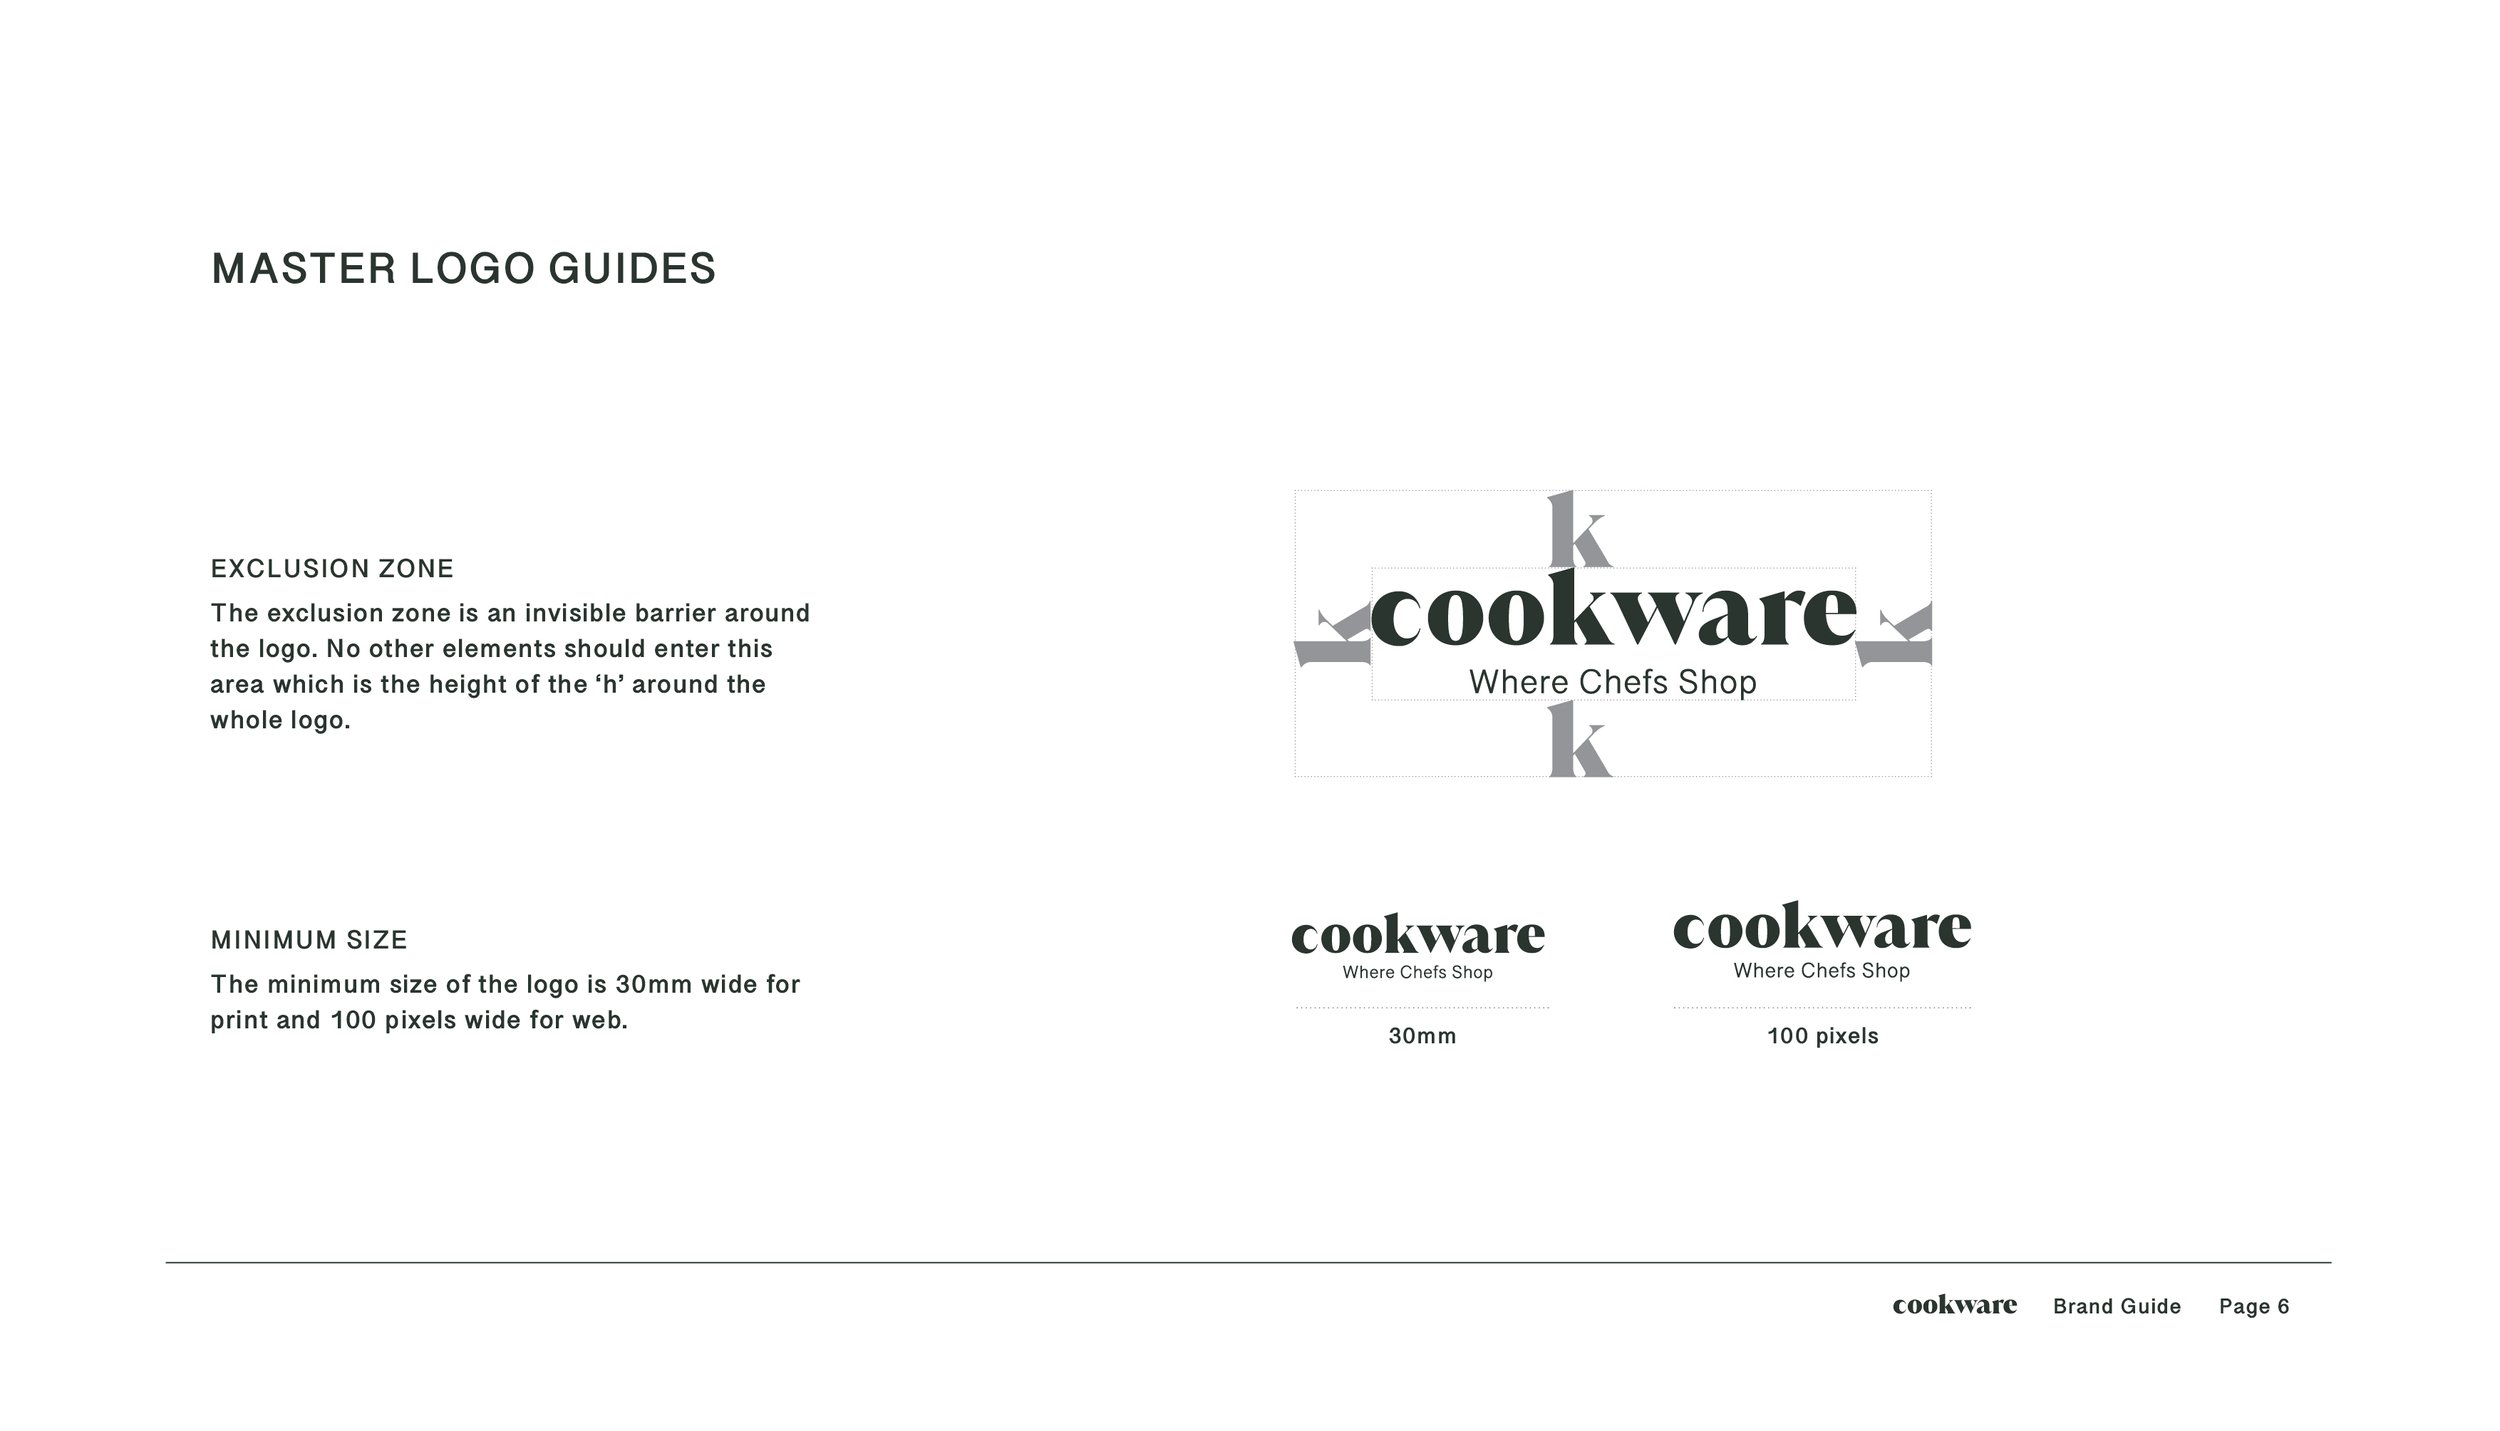 CKW002 - Brand Guide6.jpg